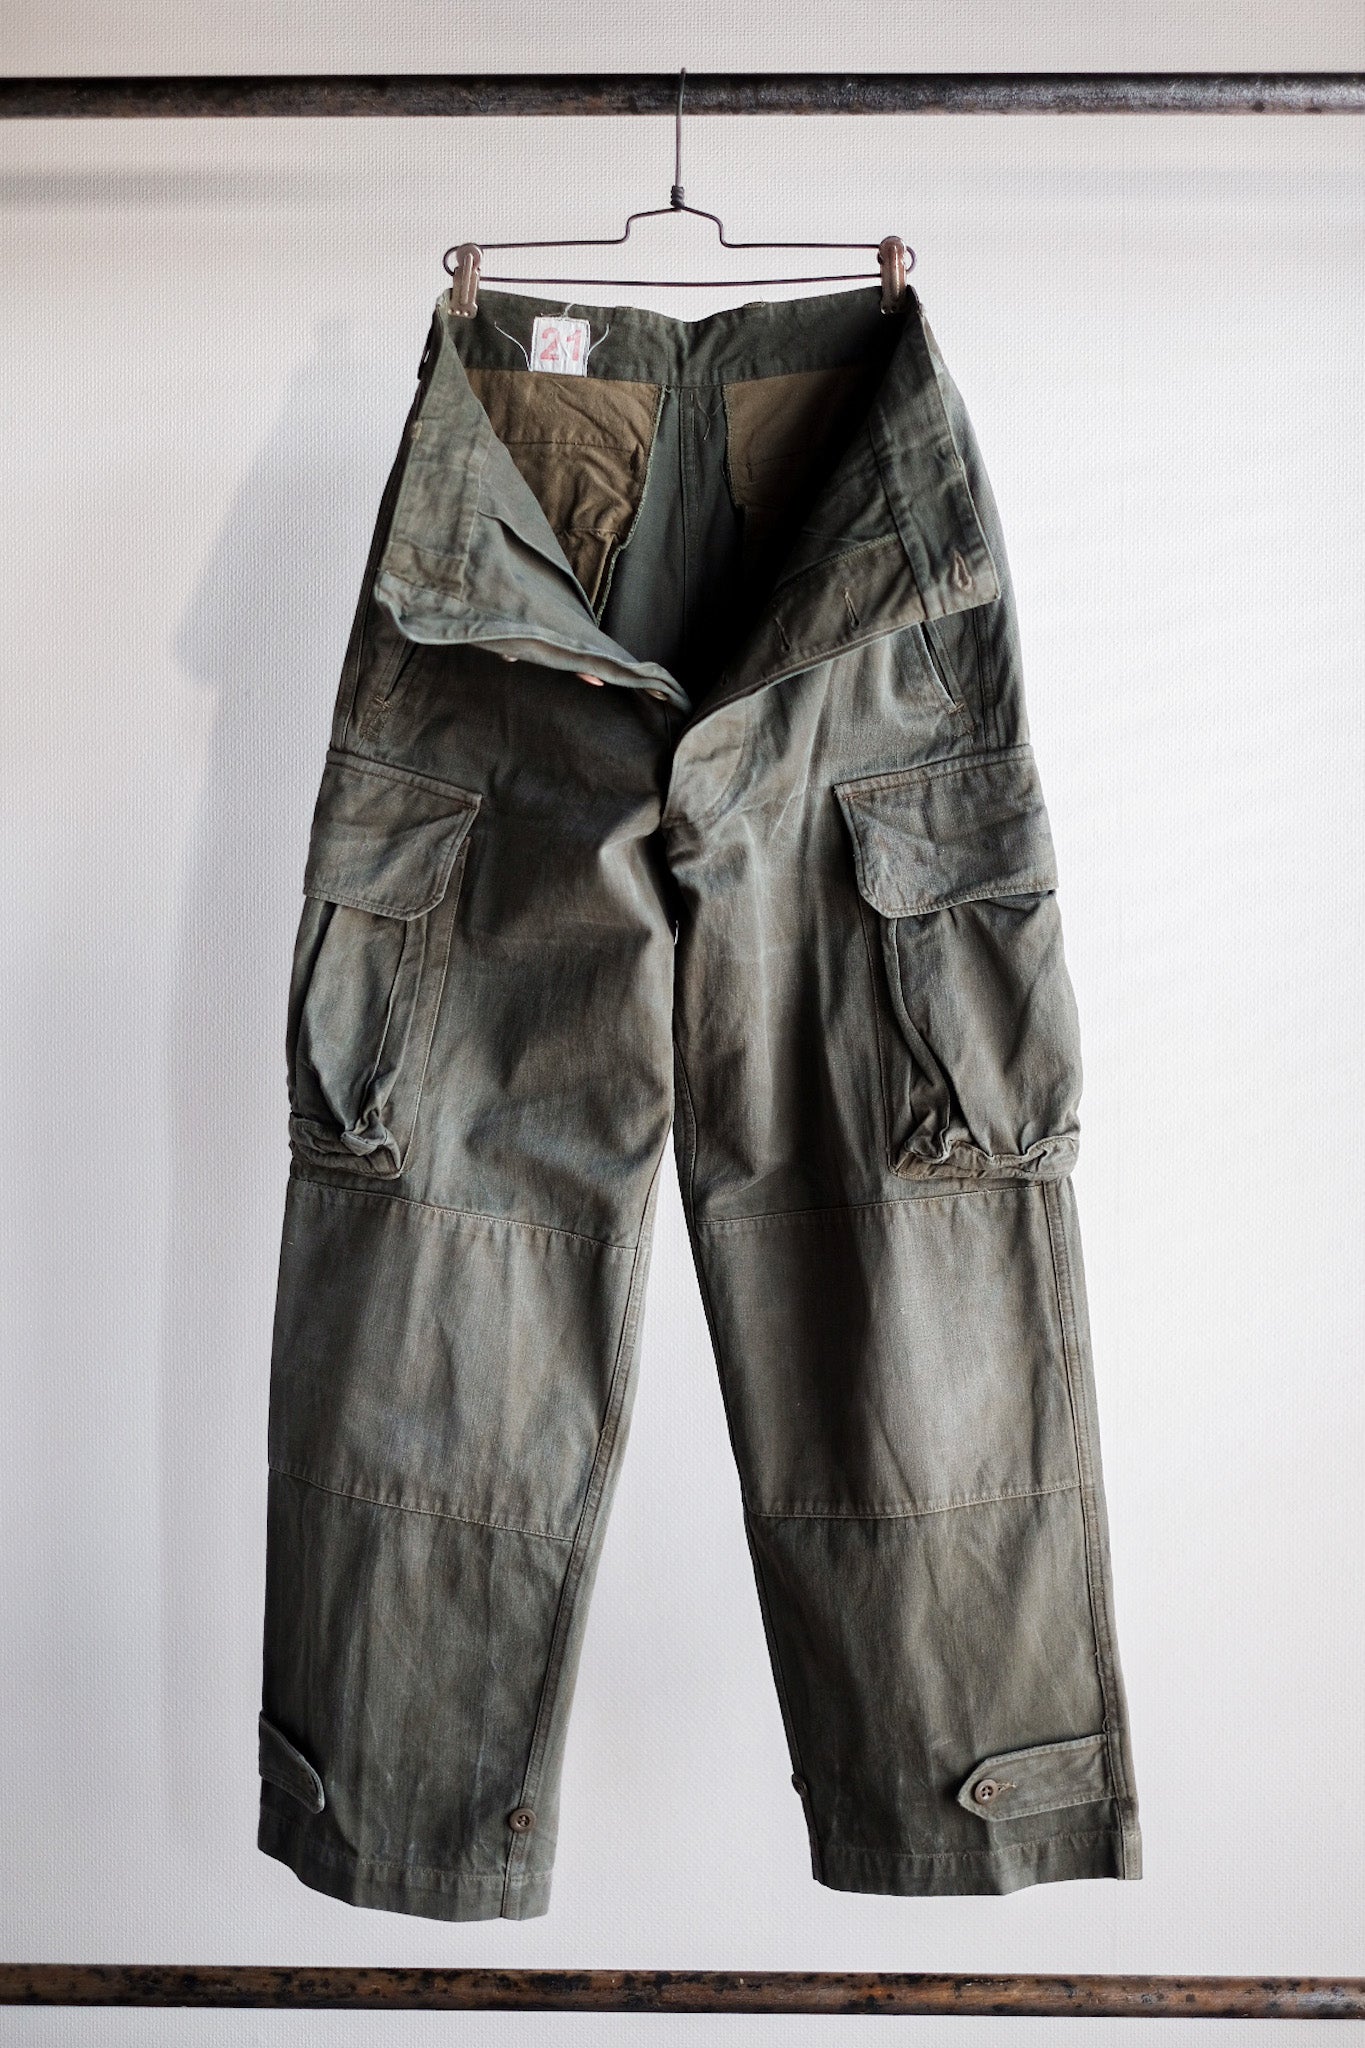 [〜60年代]法國陸軍M47野外褲子大小。21